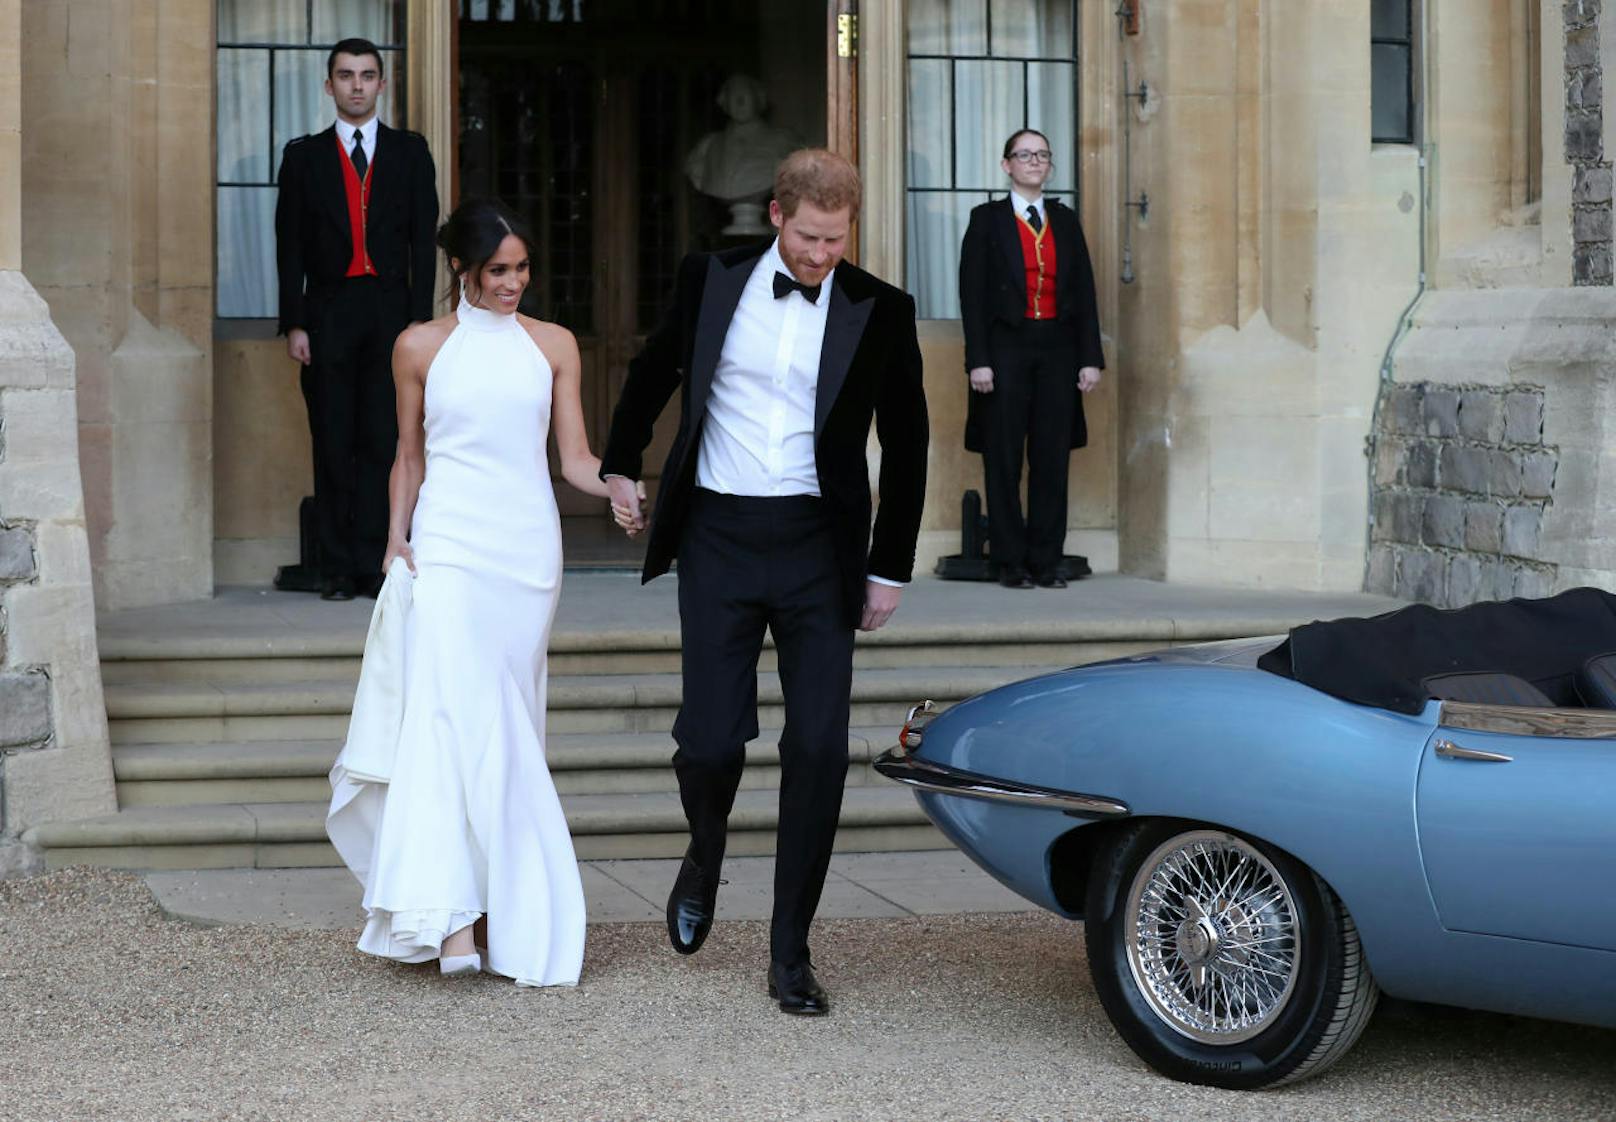 Sie präsentierte es, als sie gemeinsam mit ihrem frisch gebackenen Ehemann Prinz Harry die etwa 15-minütige Fahrt von Windsor Castle zum Frogmore House, dem Ort der abendlichen Hochzeitsfeier, antrat.